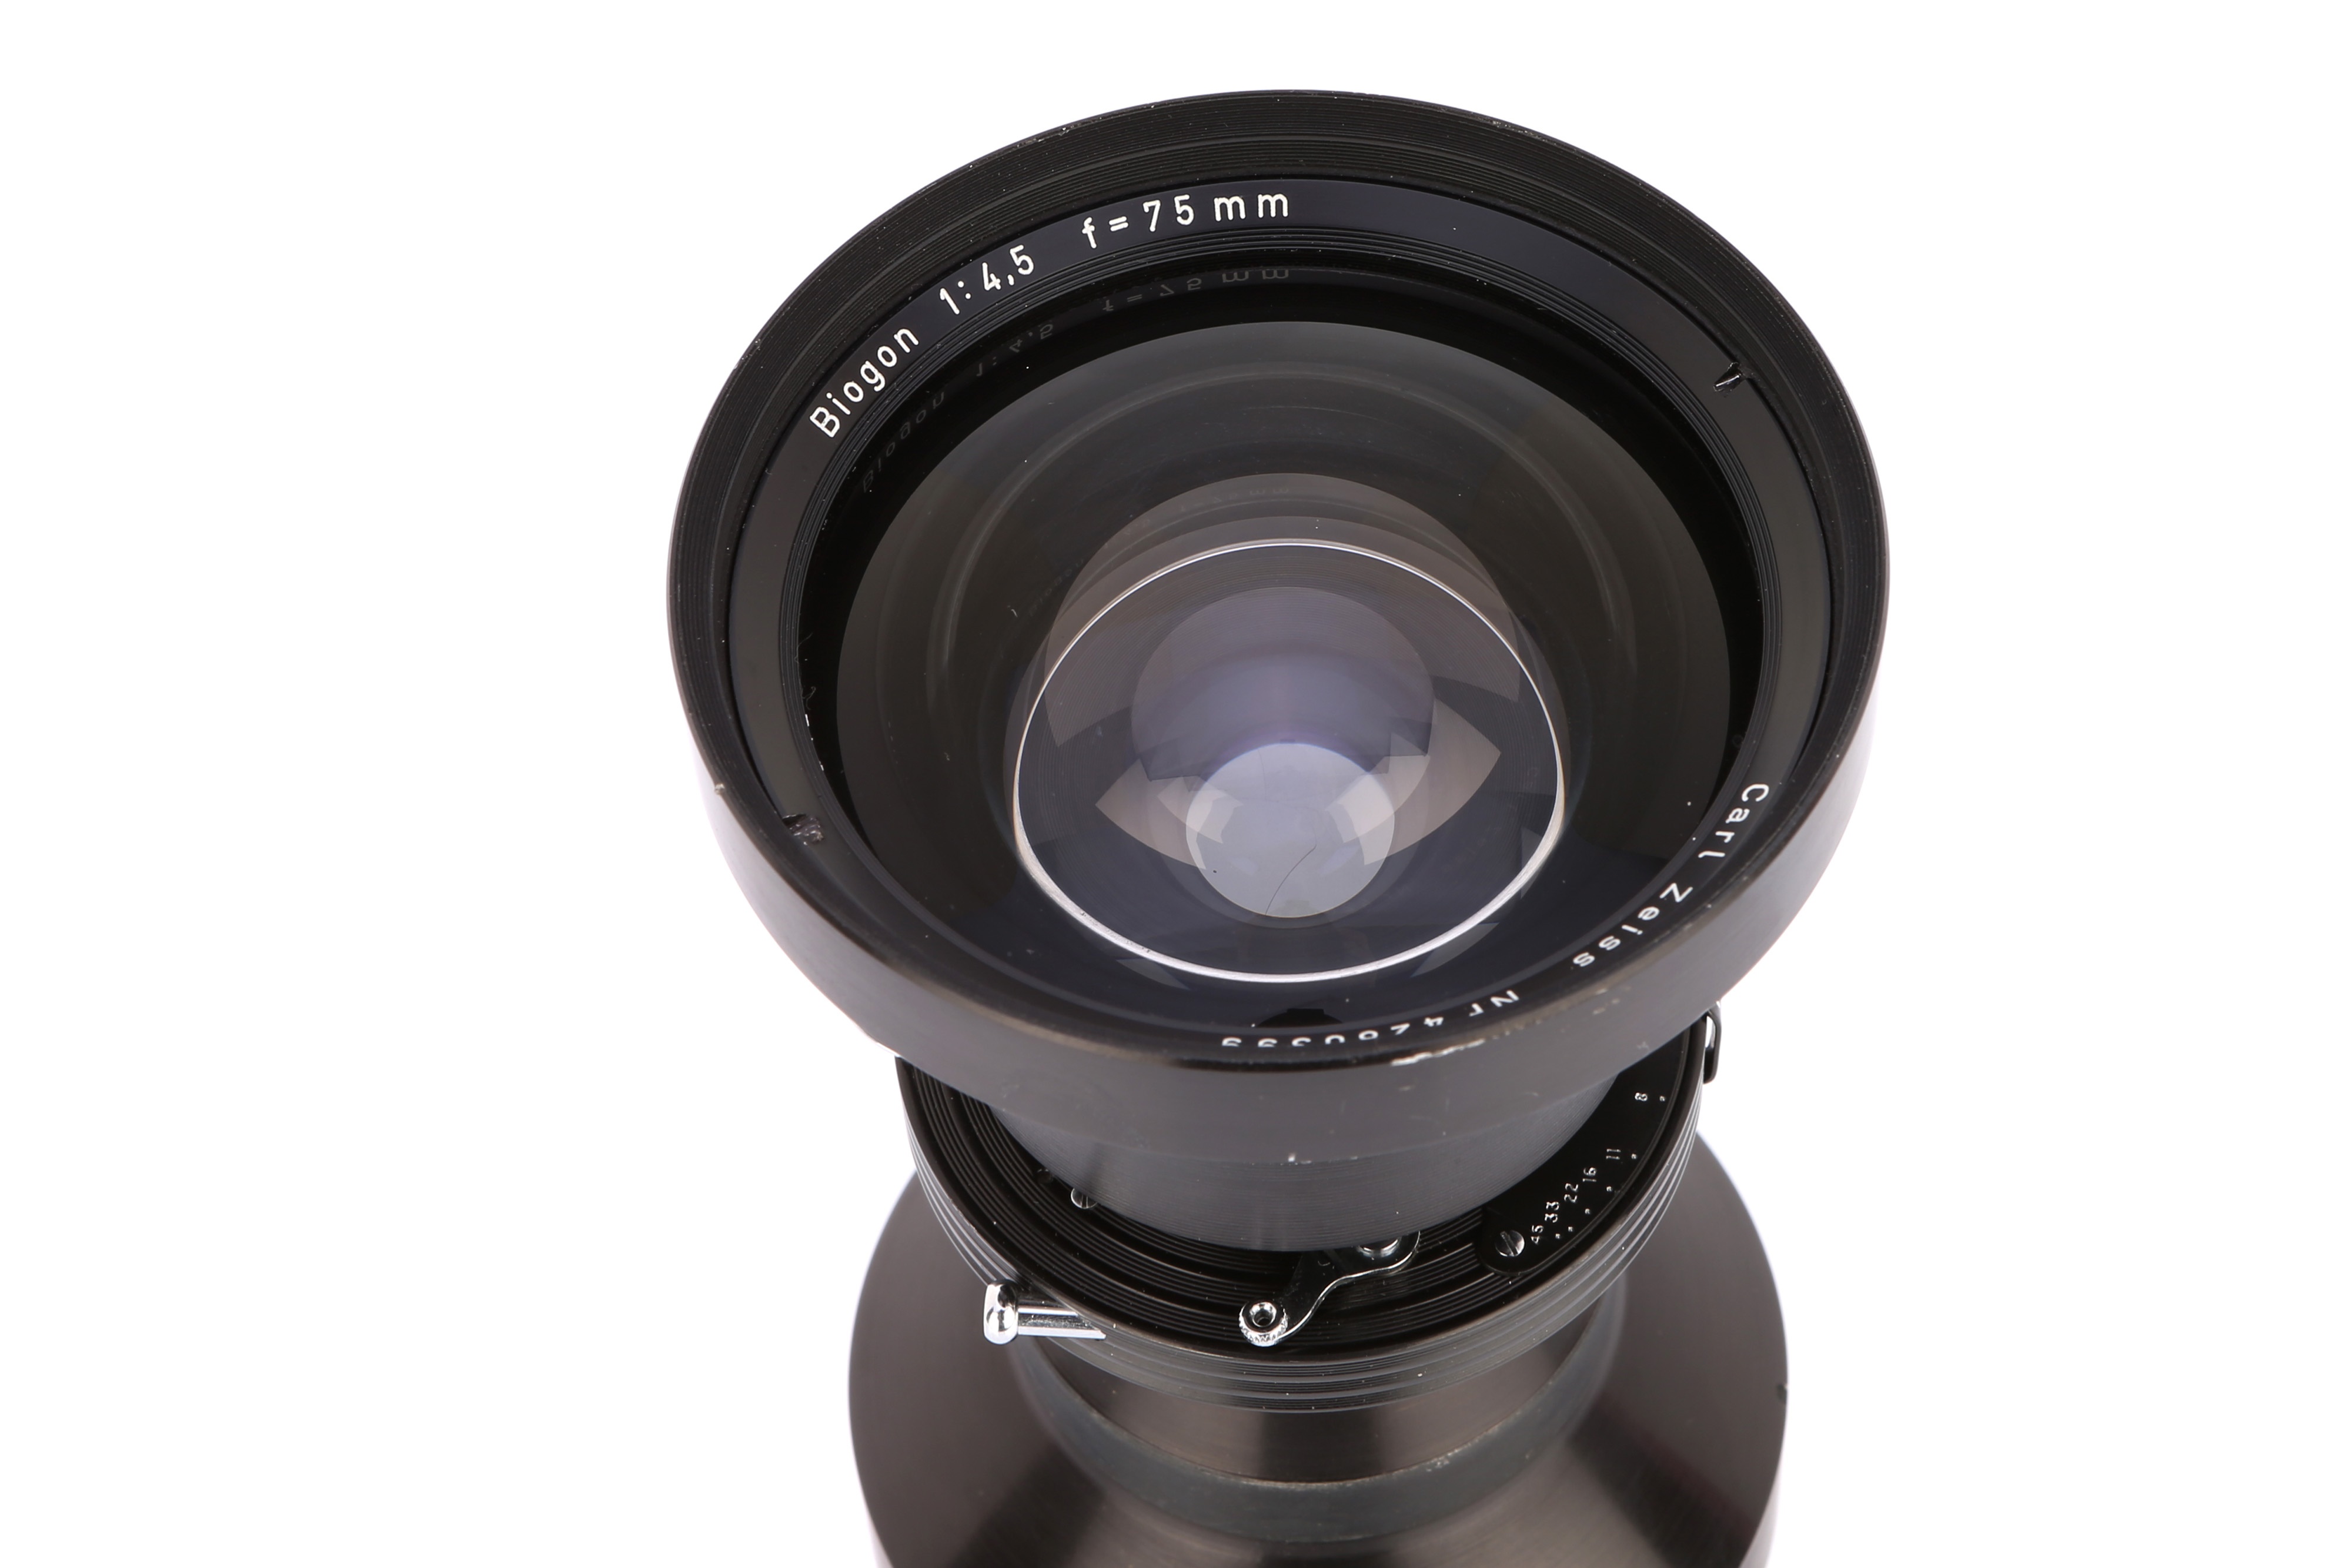 Carl Zeiss Biogon 75mm F/4.5 Lens #33946B5-